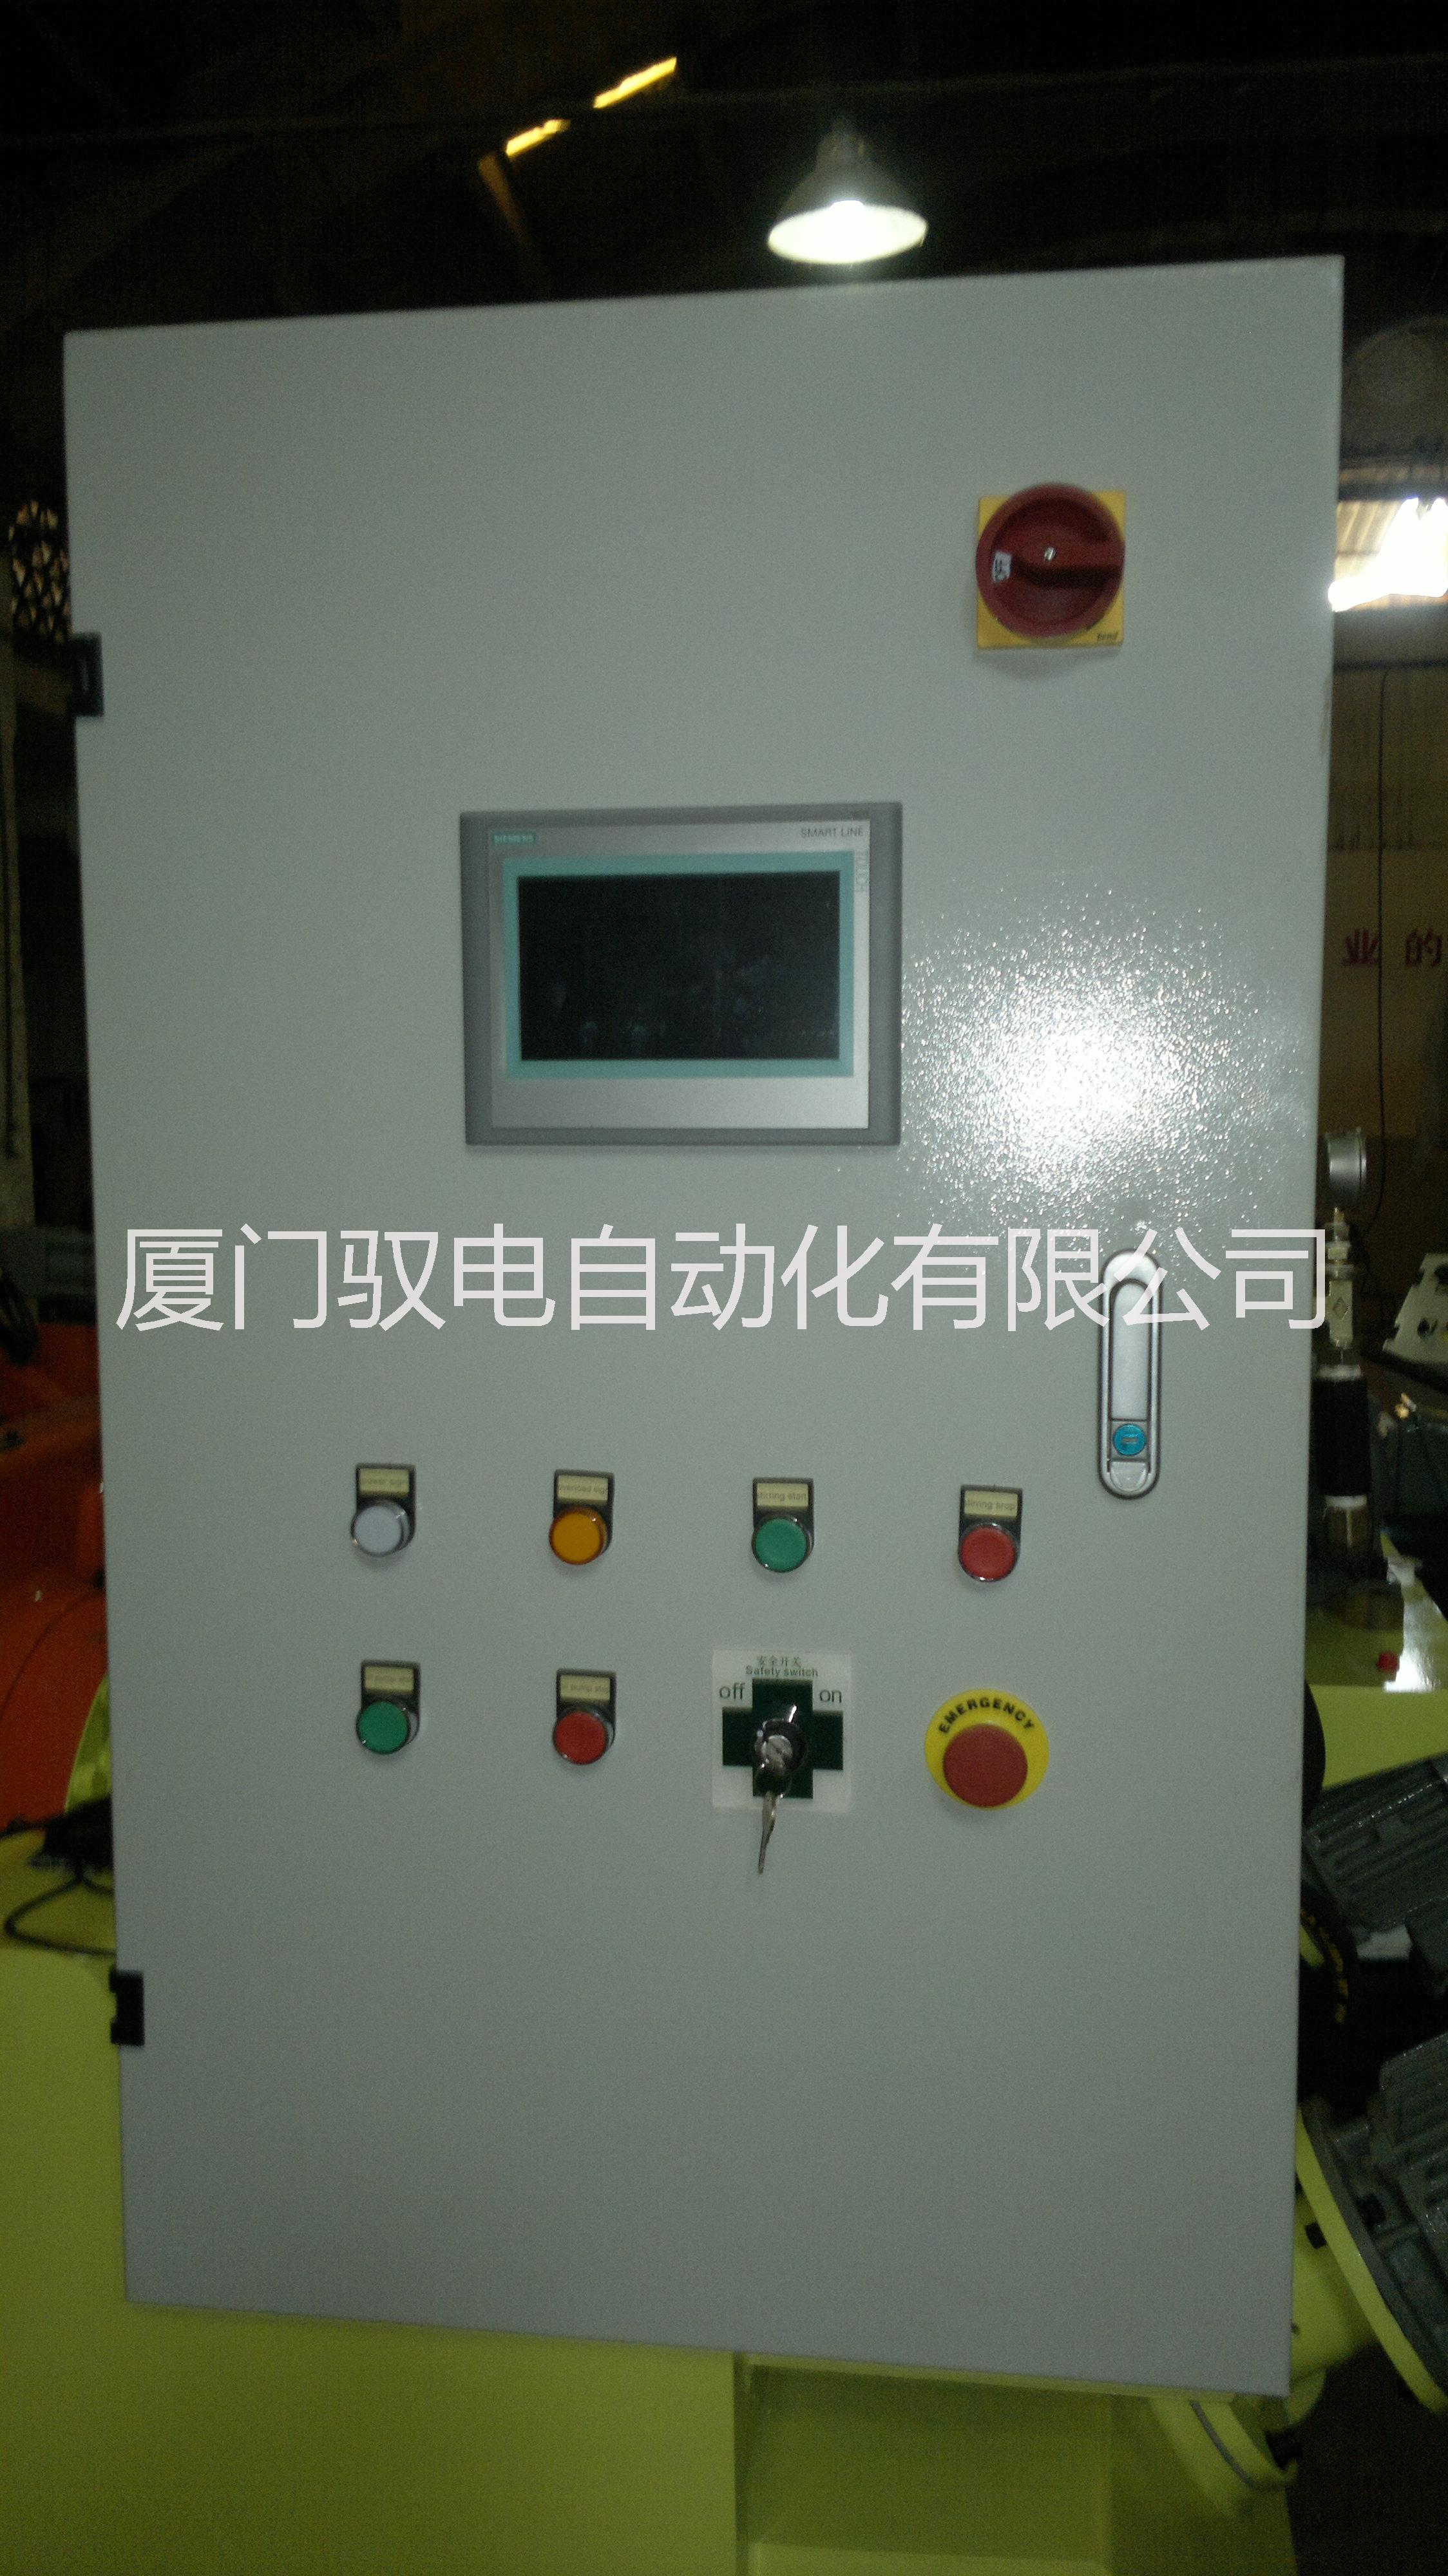 供应用于控制铸造的铸造机电控箱 厦门铸造机电控箱厂家图片